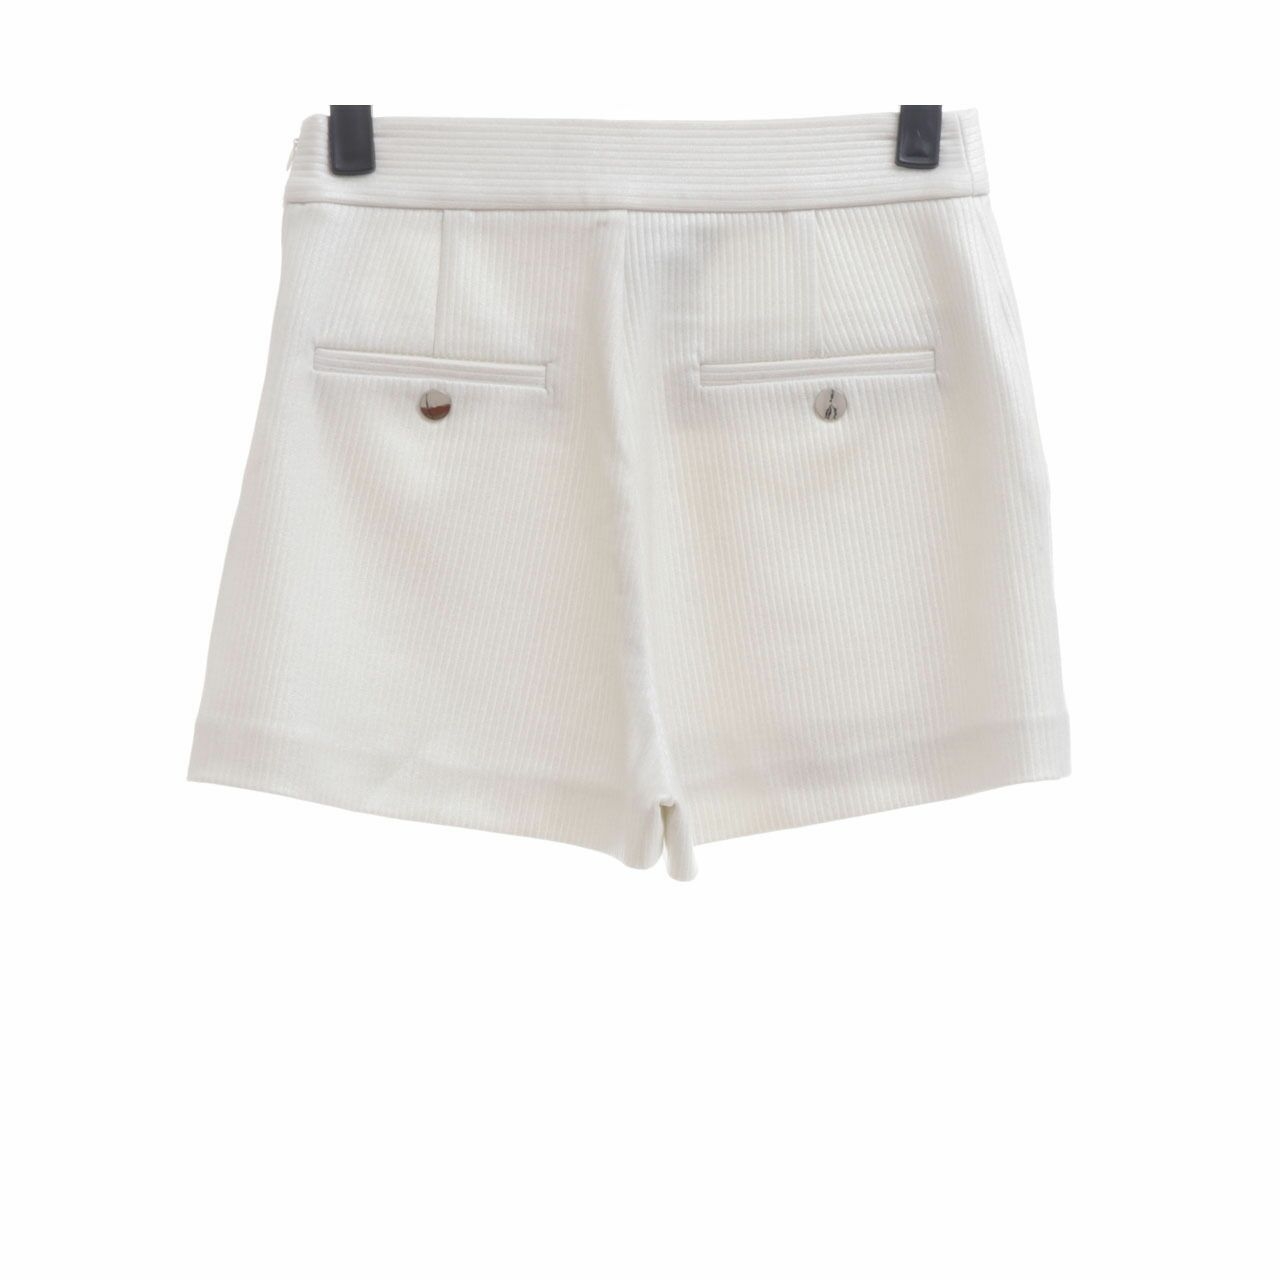 Jaspal White Shorts Pants 